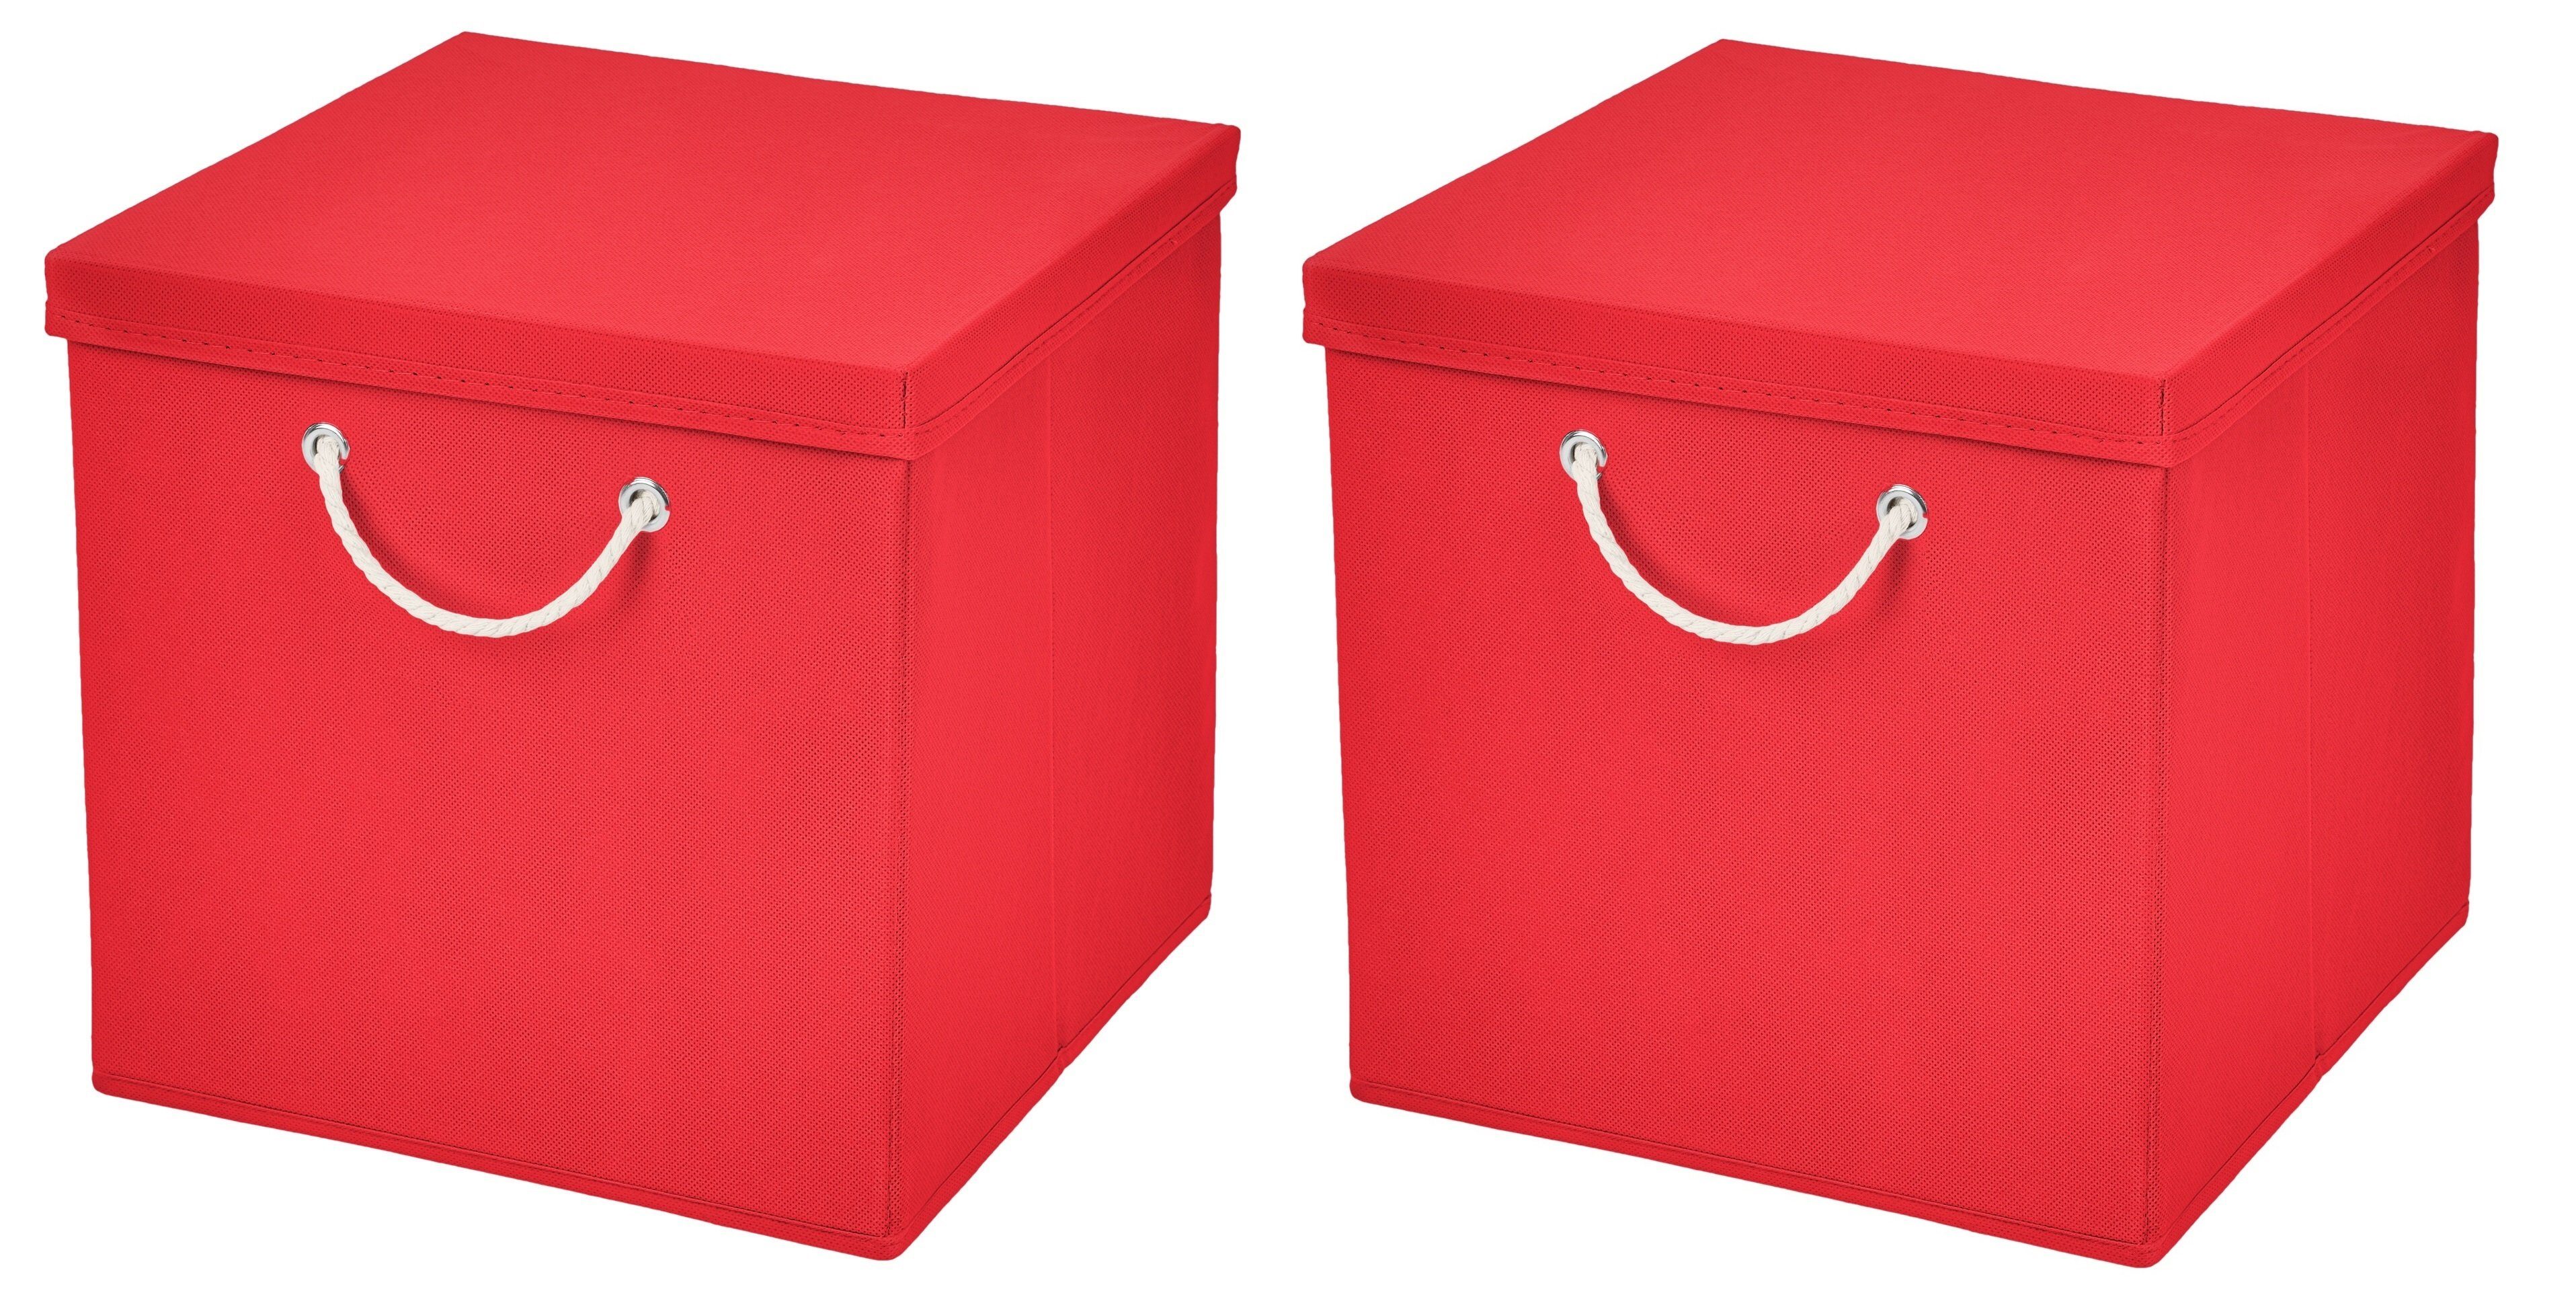 Faltbox 30x30x30 cm mit Deckel in vielen Farben - Martimi Kordel